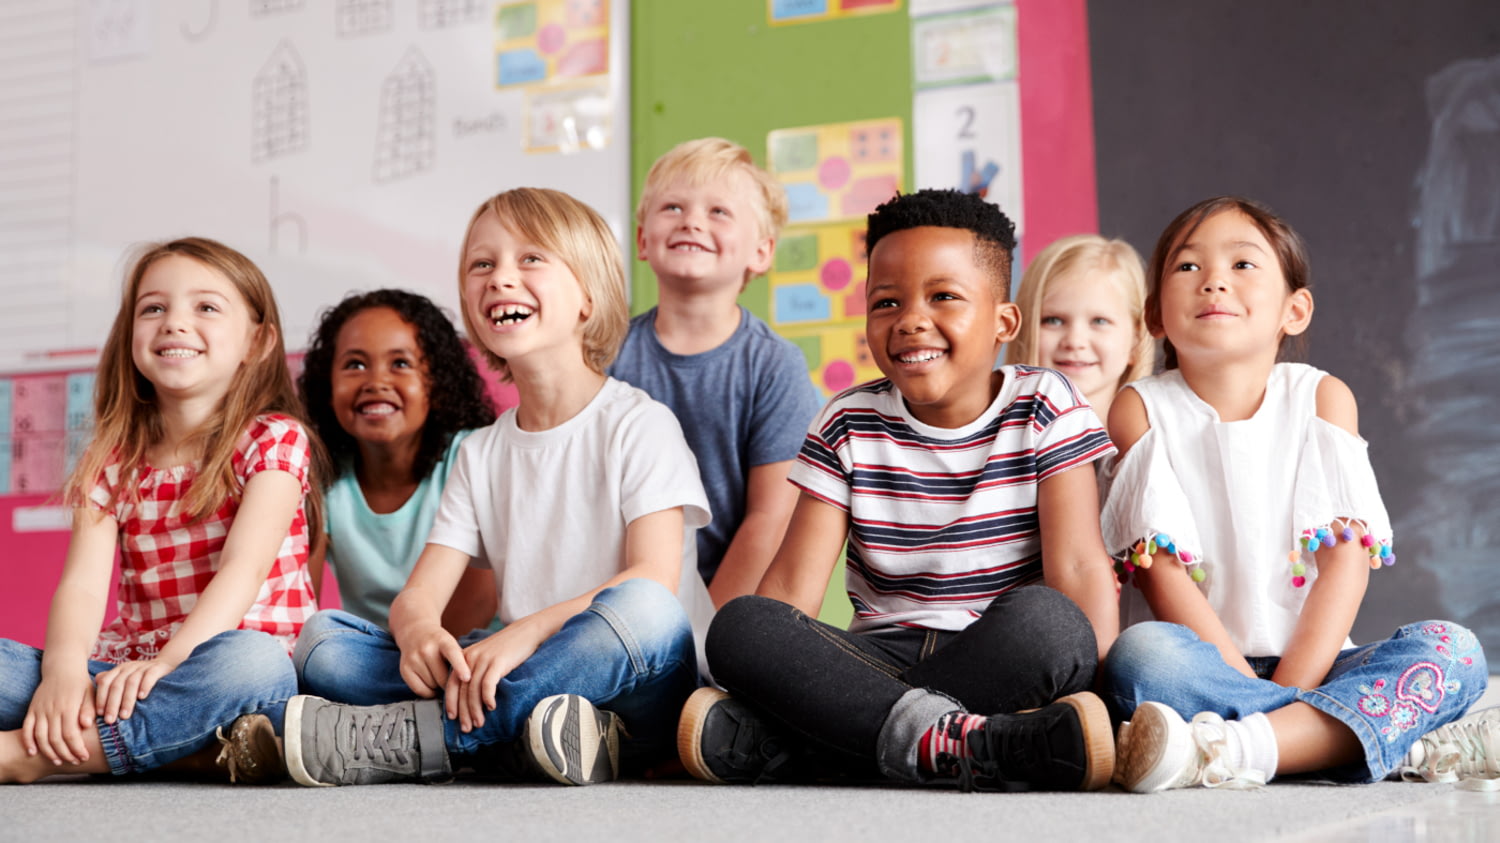 Sieben Kinder sitzen lächelnd auf dem Boden in einem Klassenzimmer